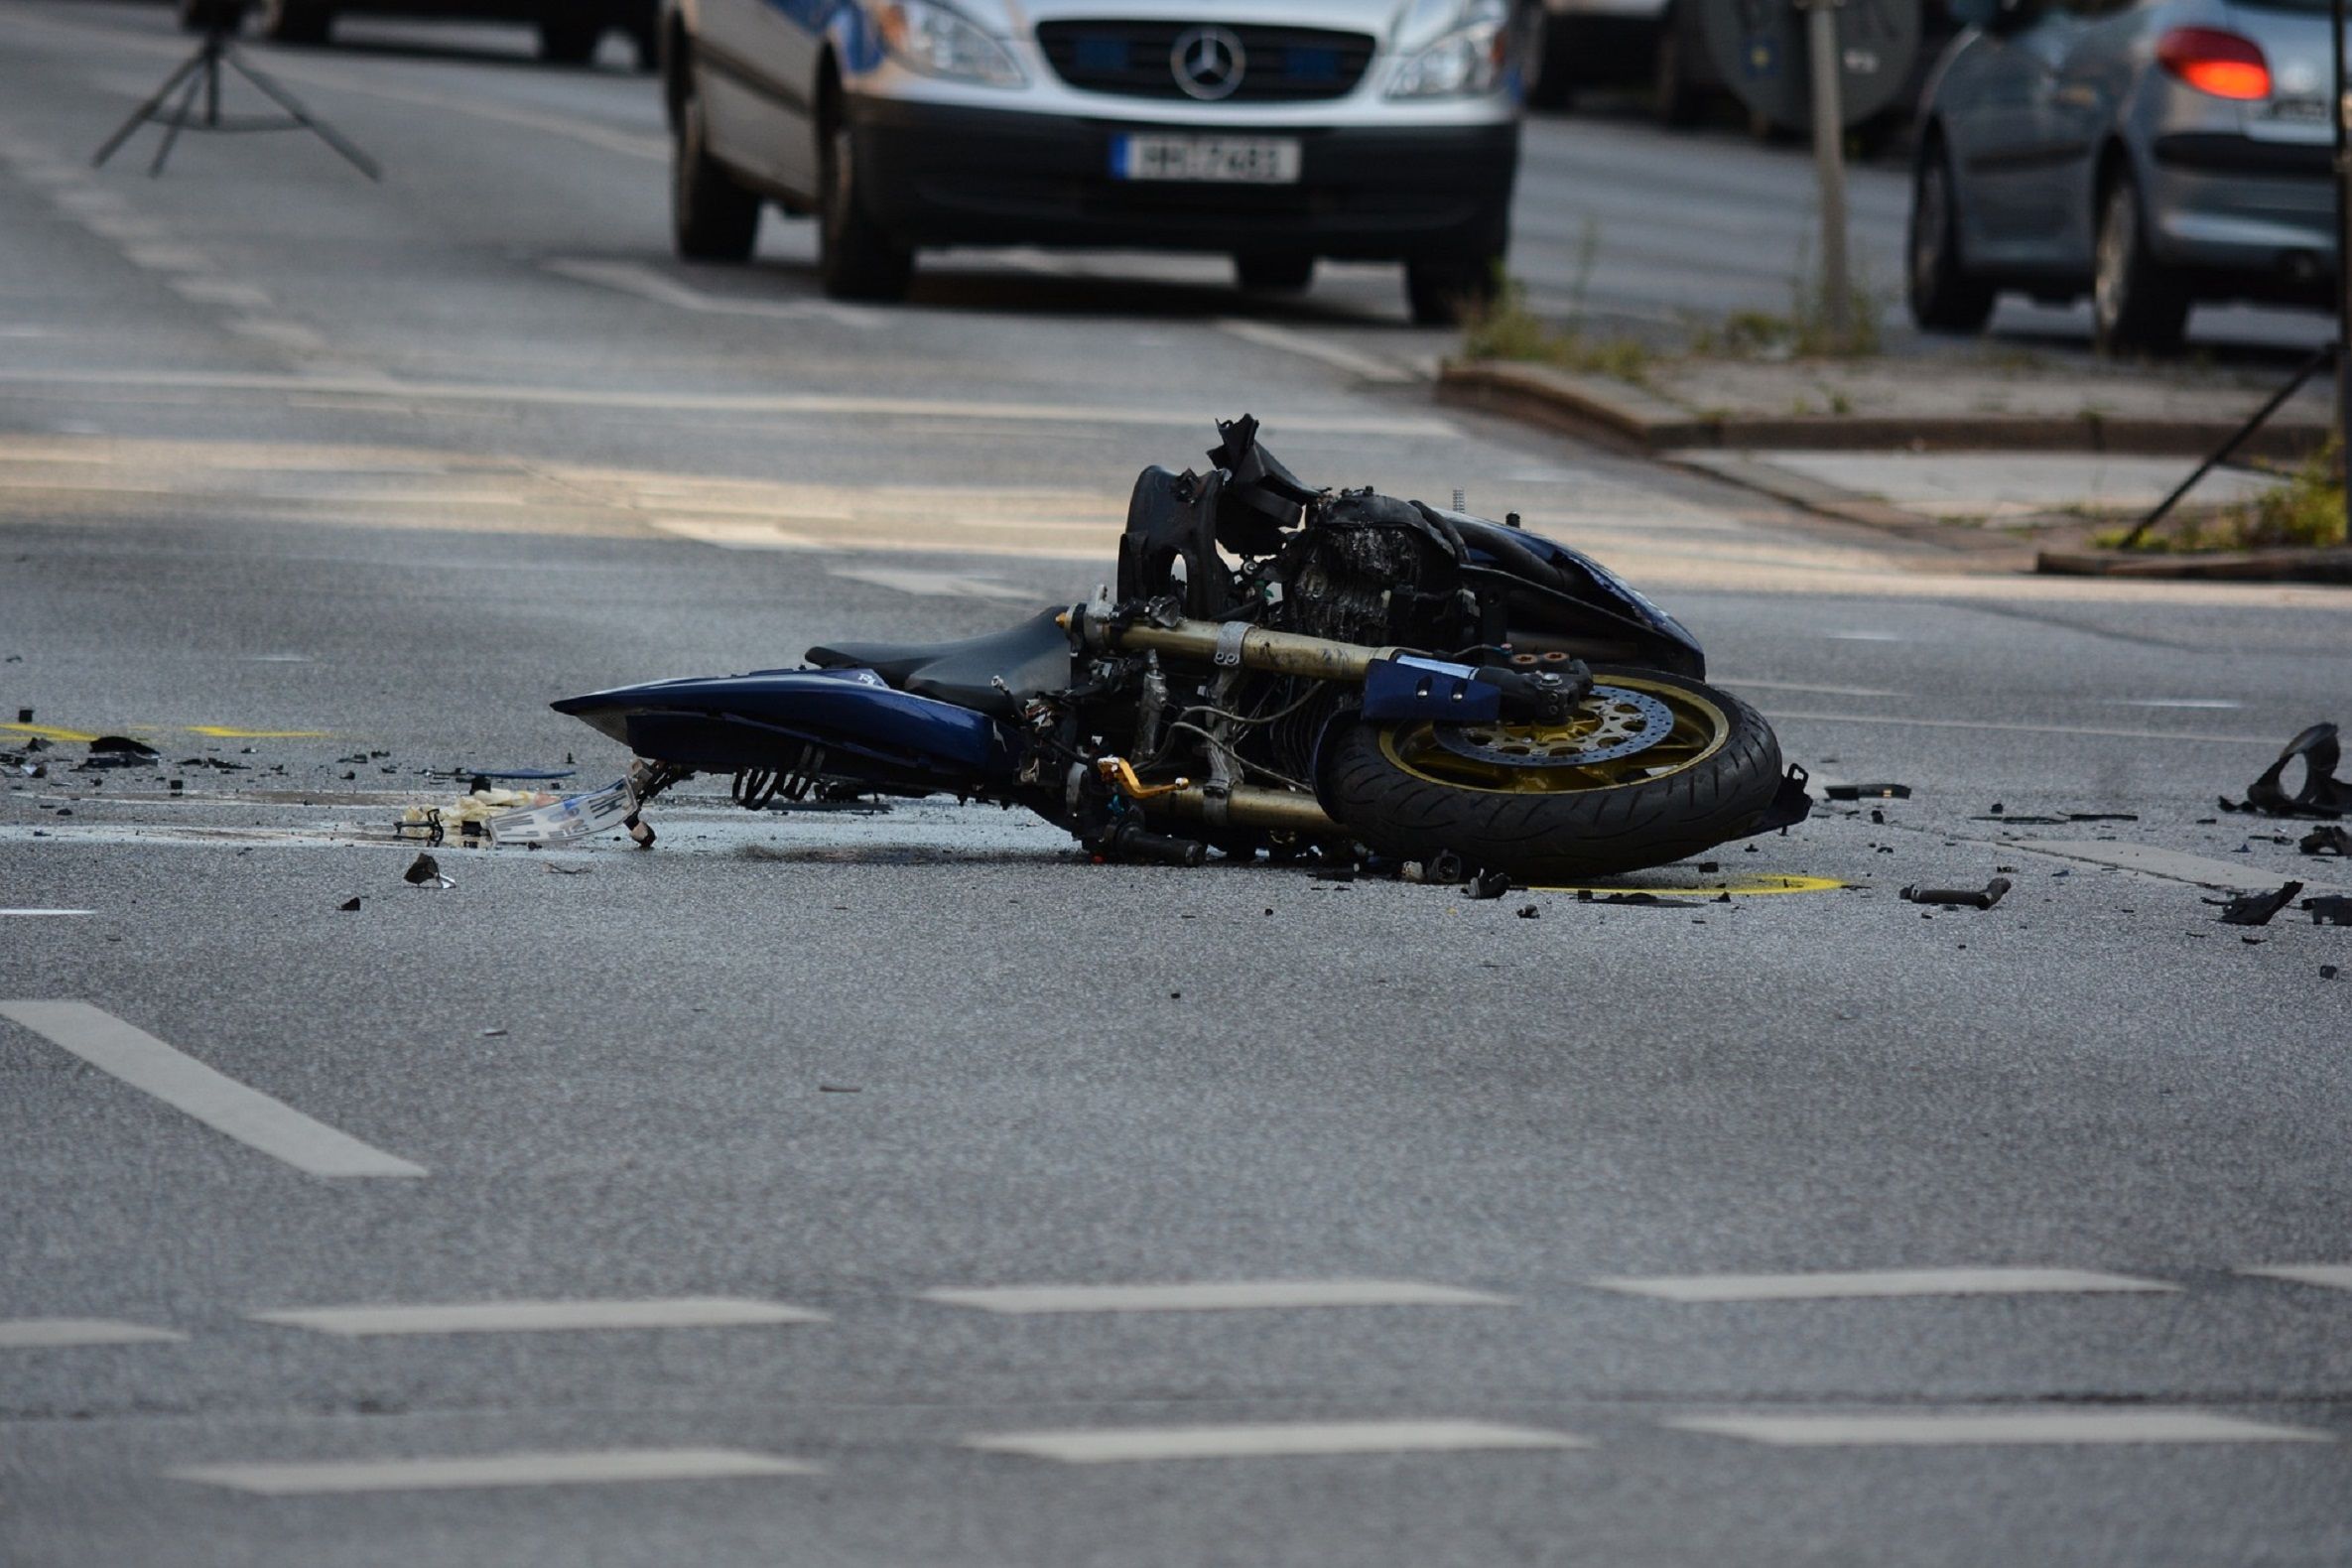 Moto accidente / Pixabay